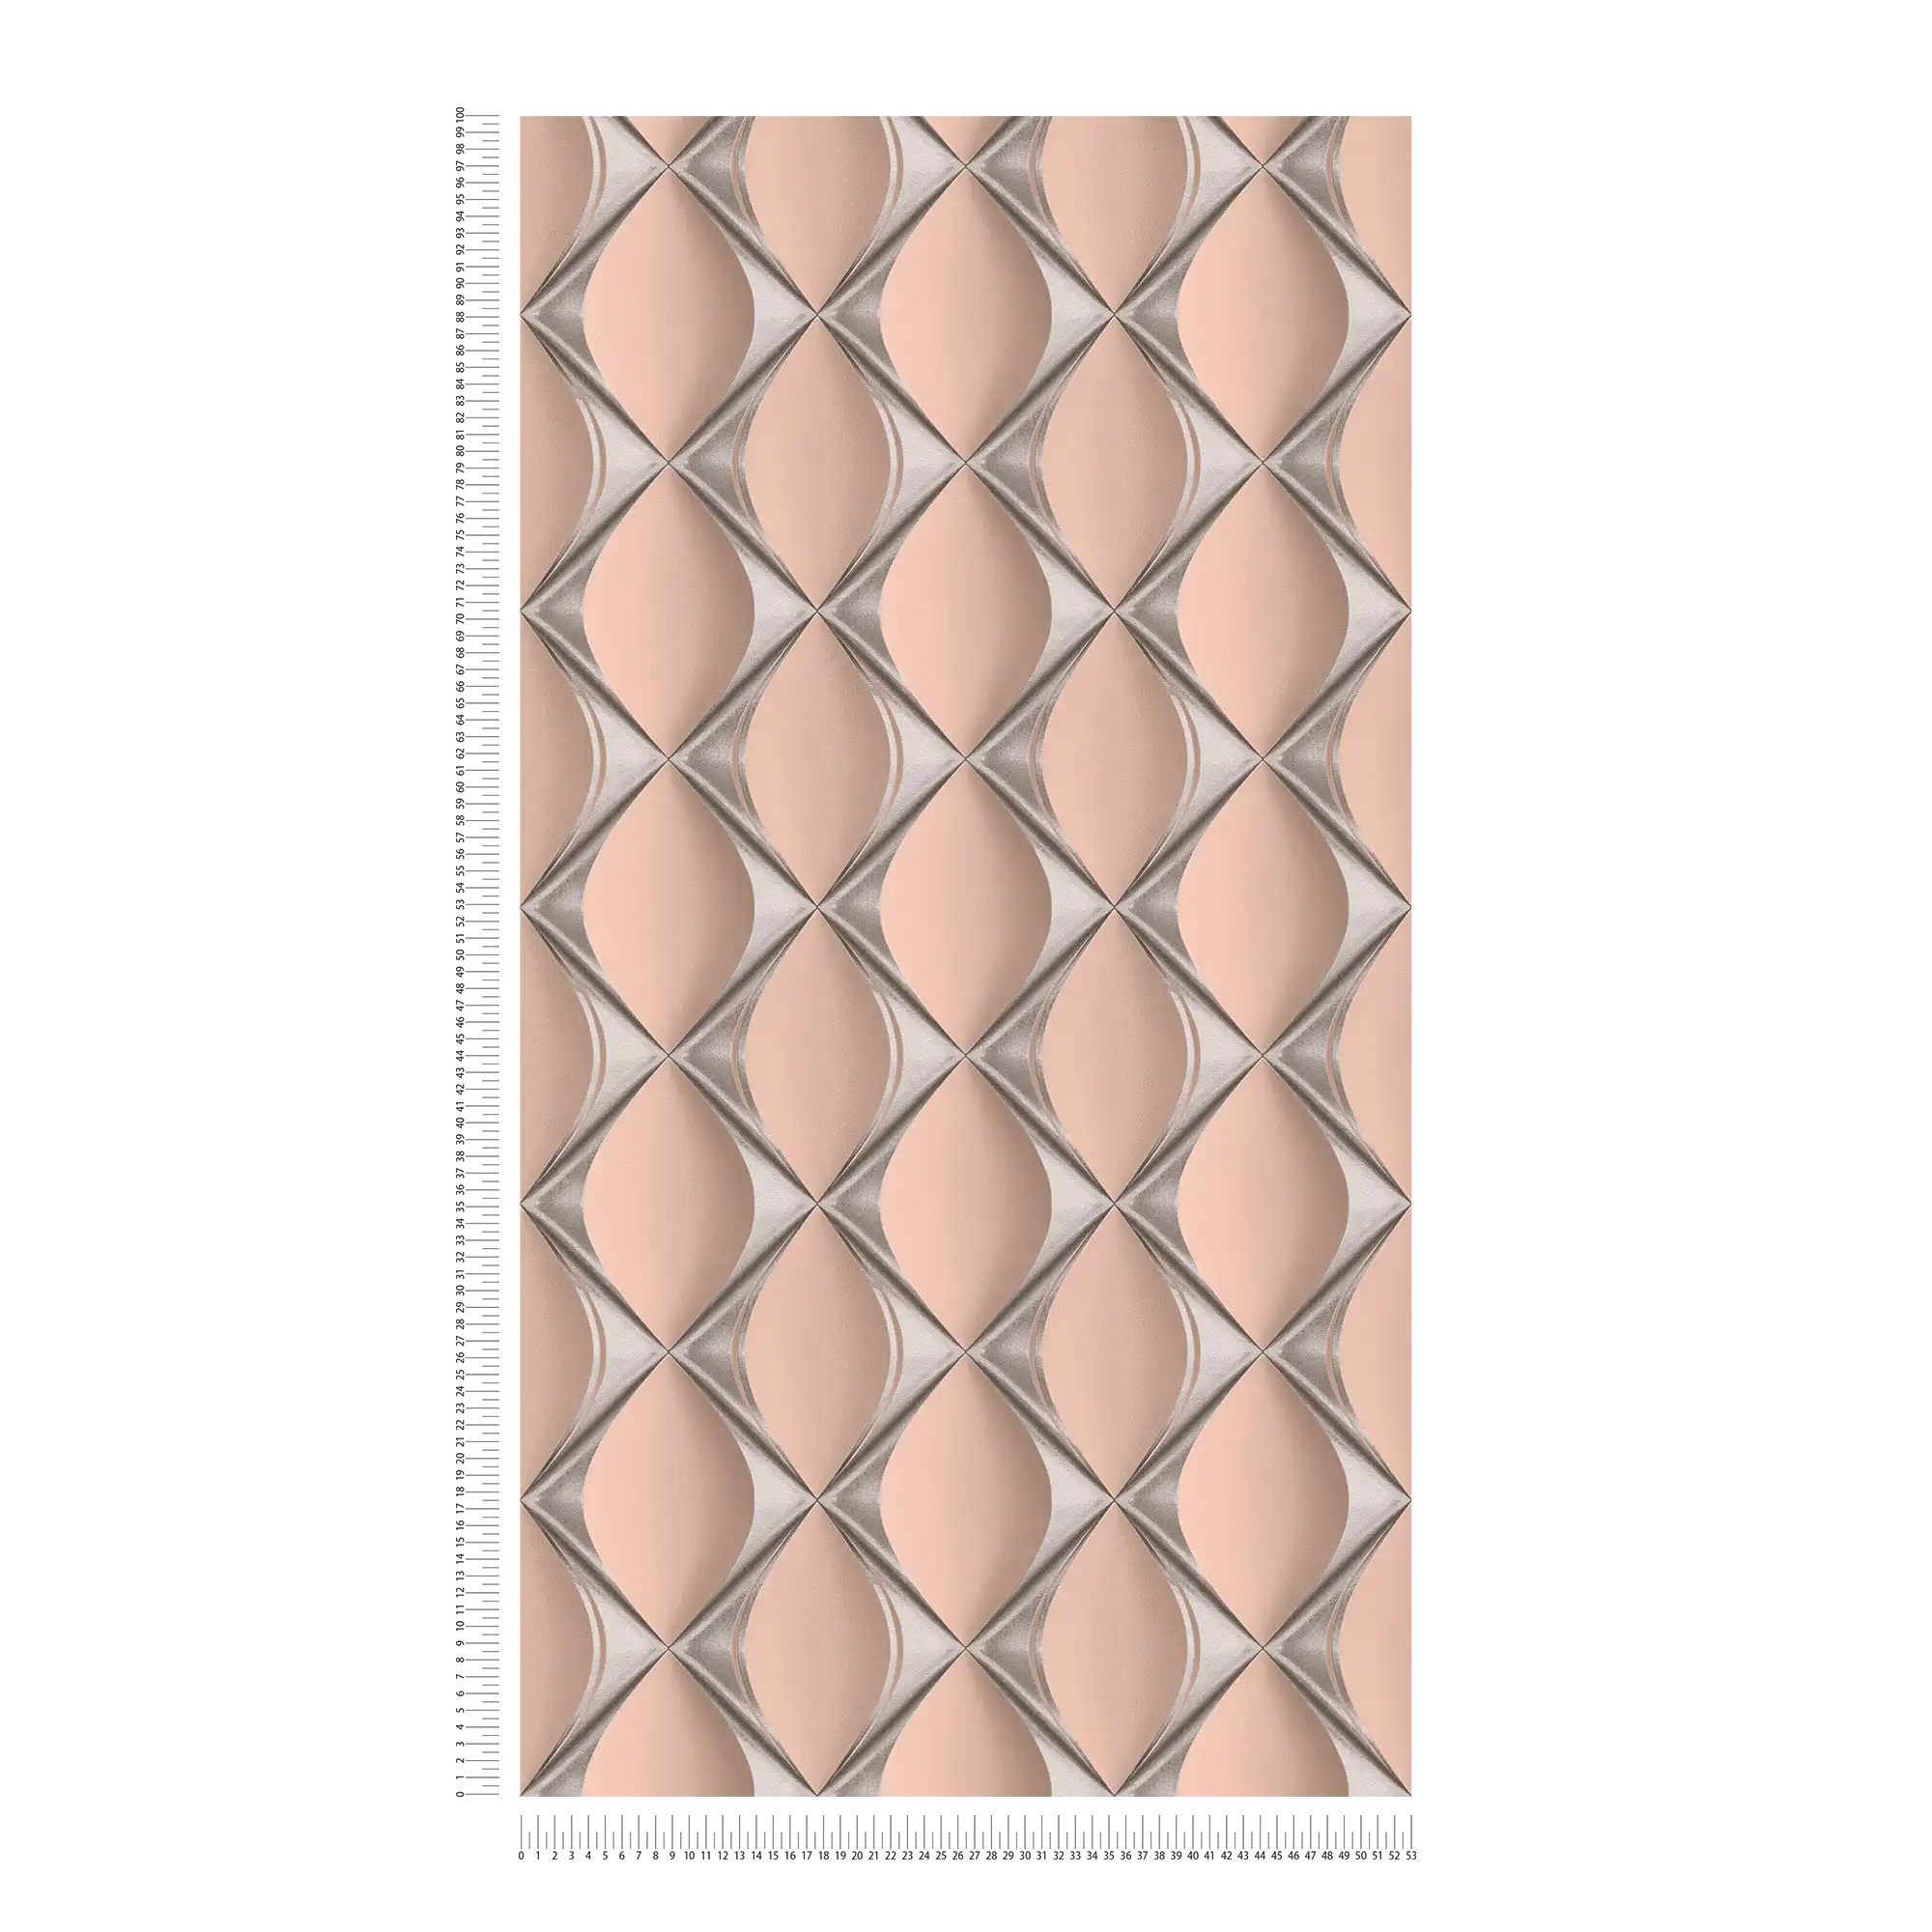             Designbehang 3D met metallic ruitpatroon - roze, metallic
        